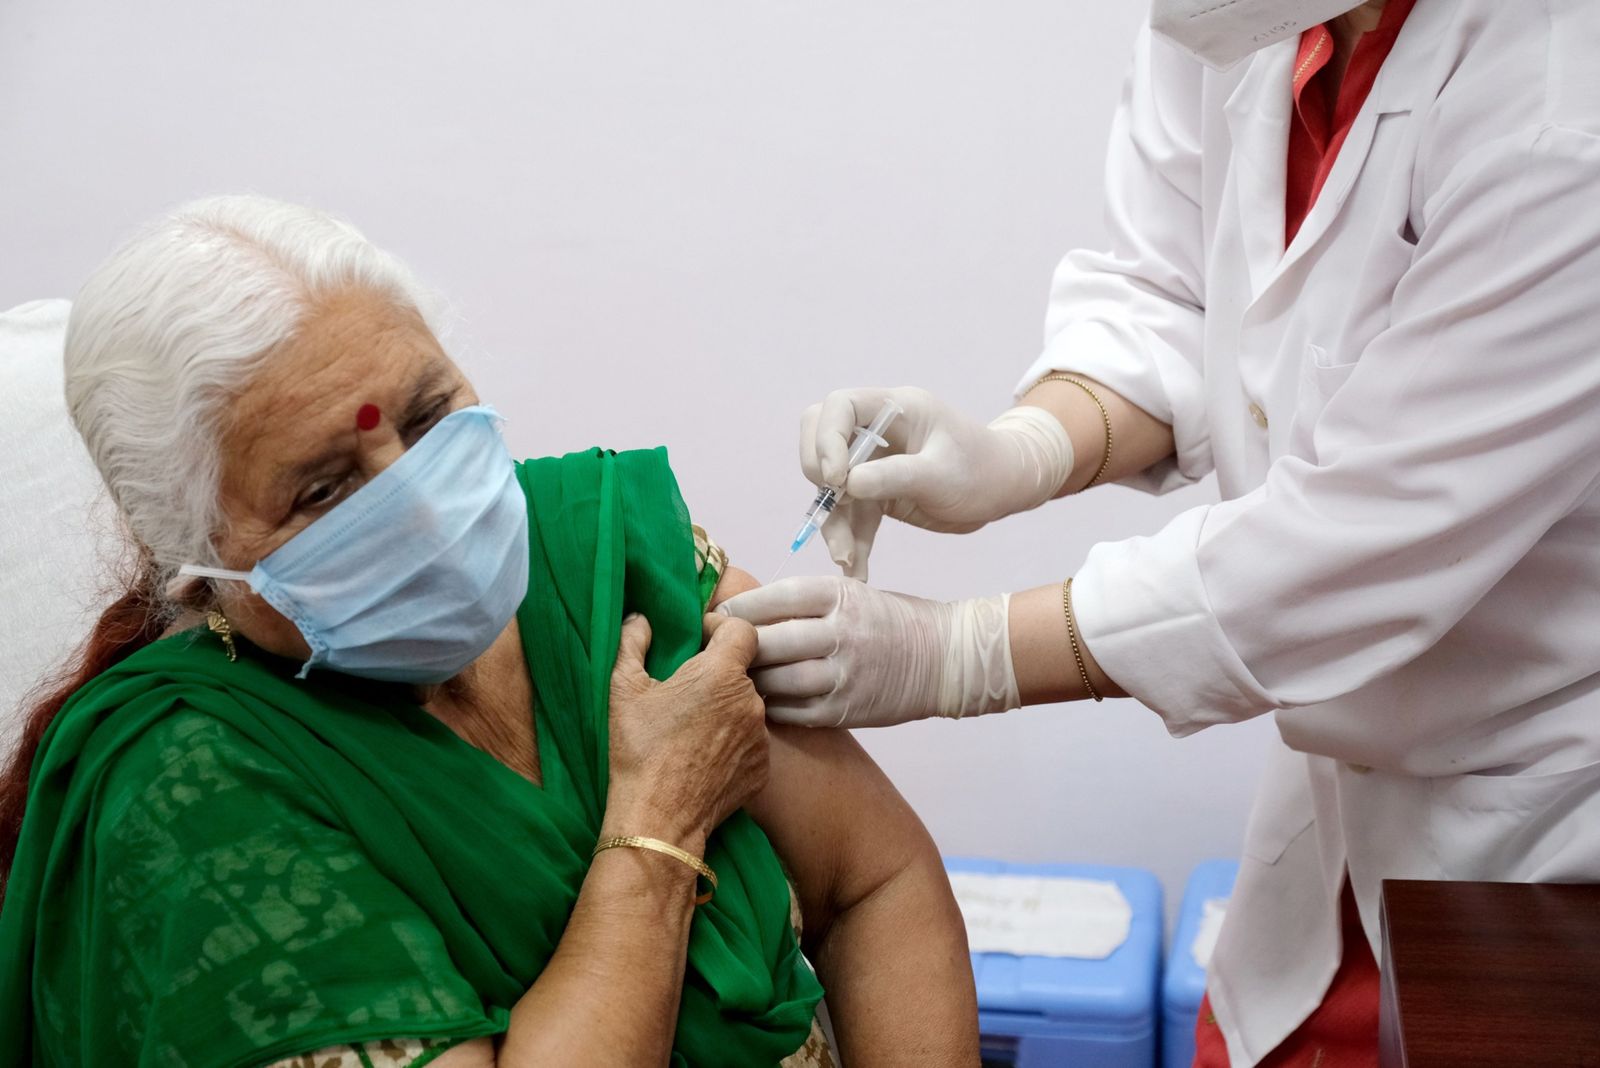 تطعيم امرأة ضد فيروس كورونا في مستشفى بنيودلهي - 1 مارس 2021  - Bloomberg